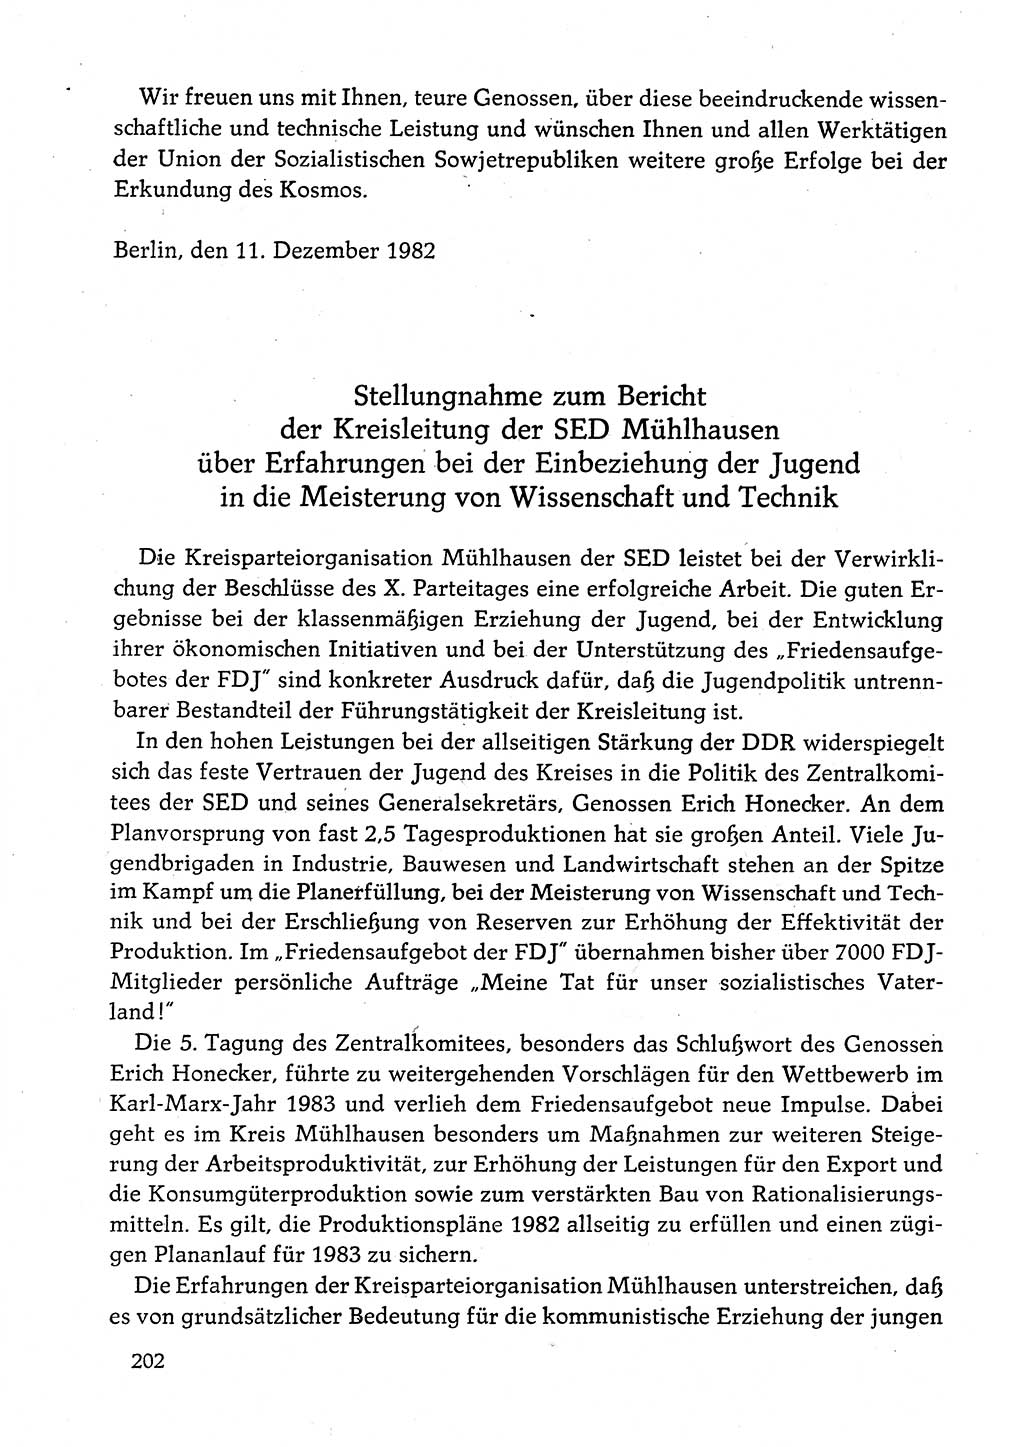 Dokumente der Sozialistischen Einheitspartei Deutschlands (SED) [Deutsche Demokratische Republik (DDR)] 1982-1983, Seite 202 (Dok. SED DDR 1982-1983, S. 202)